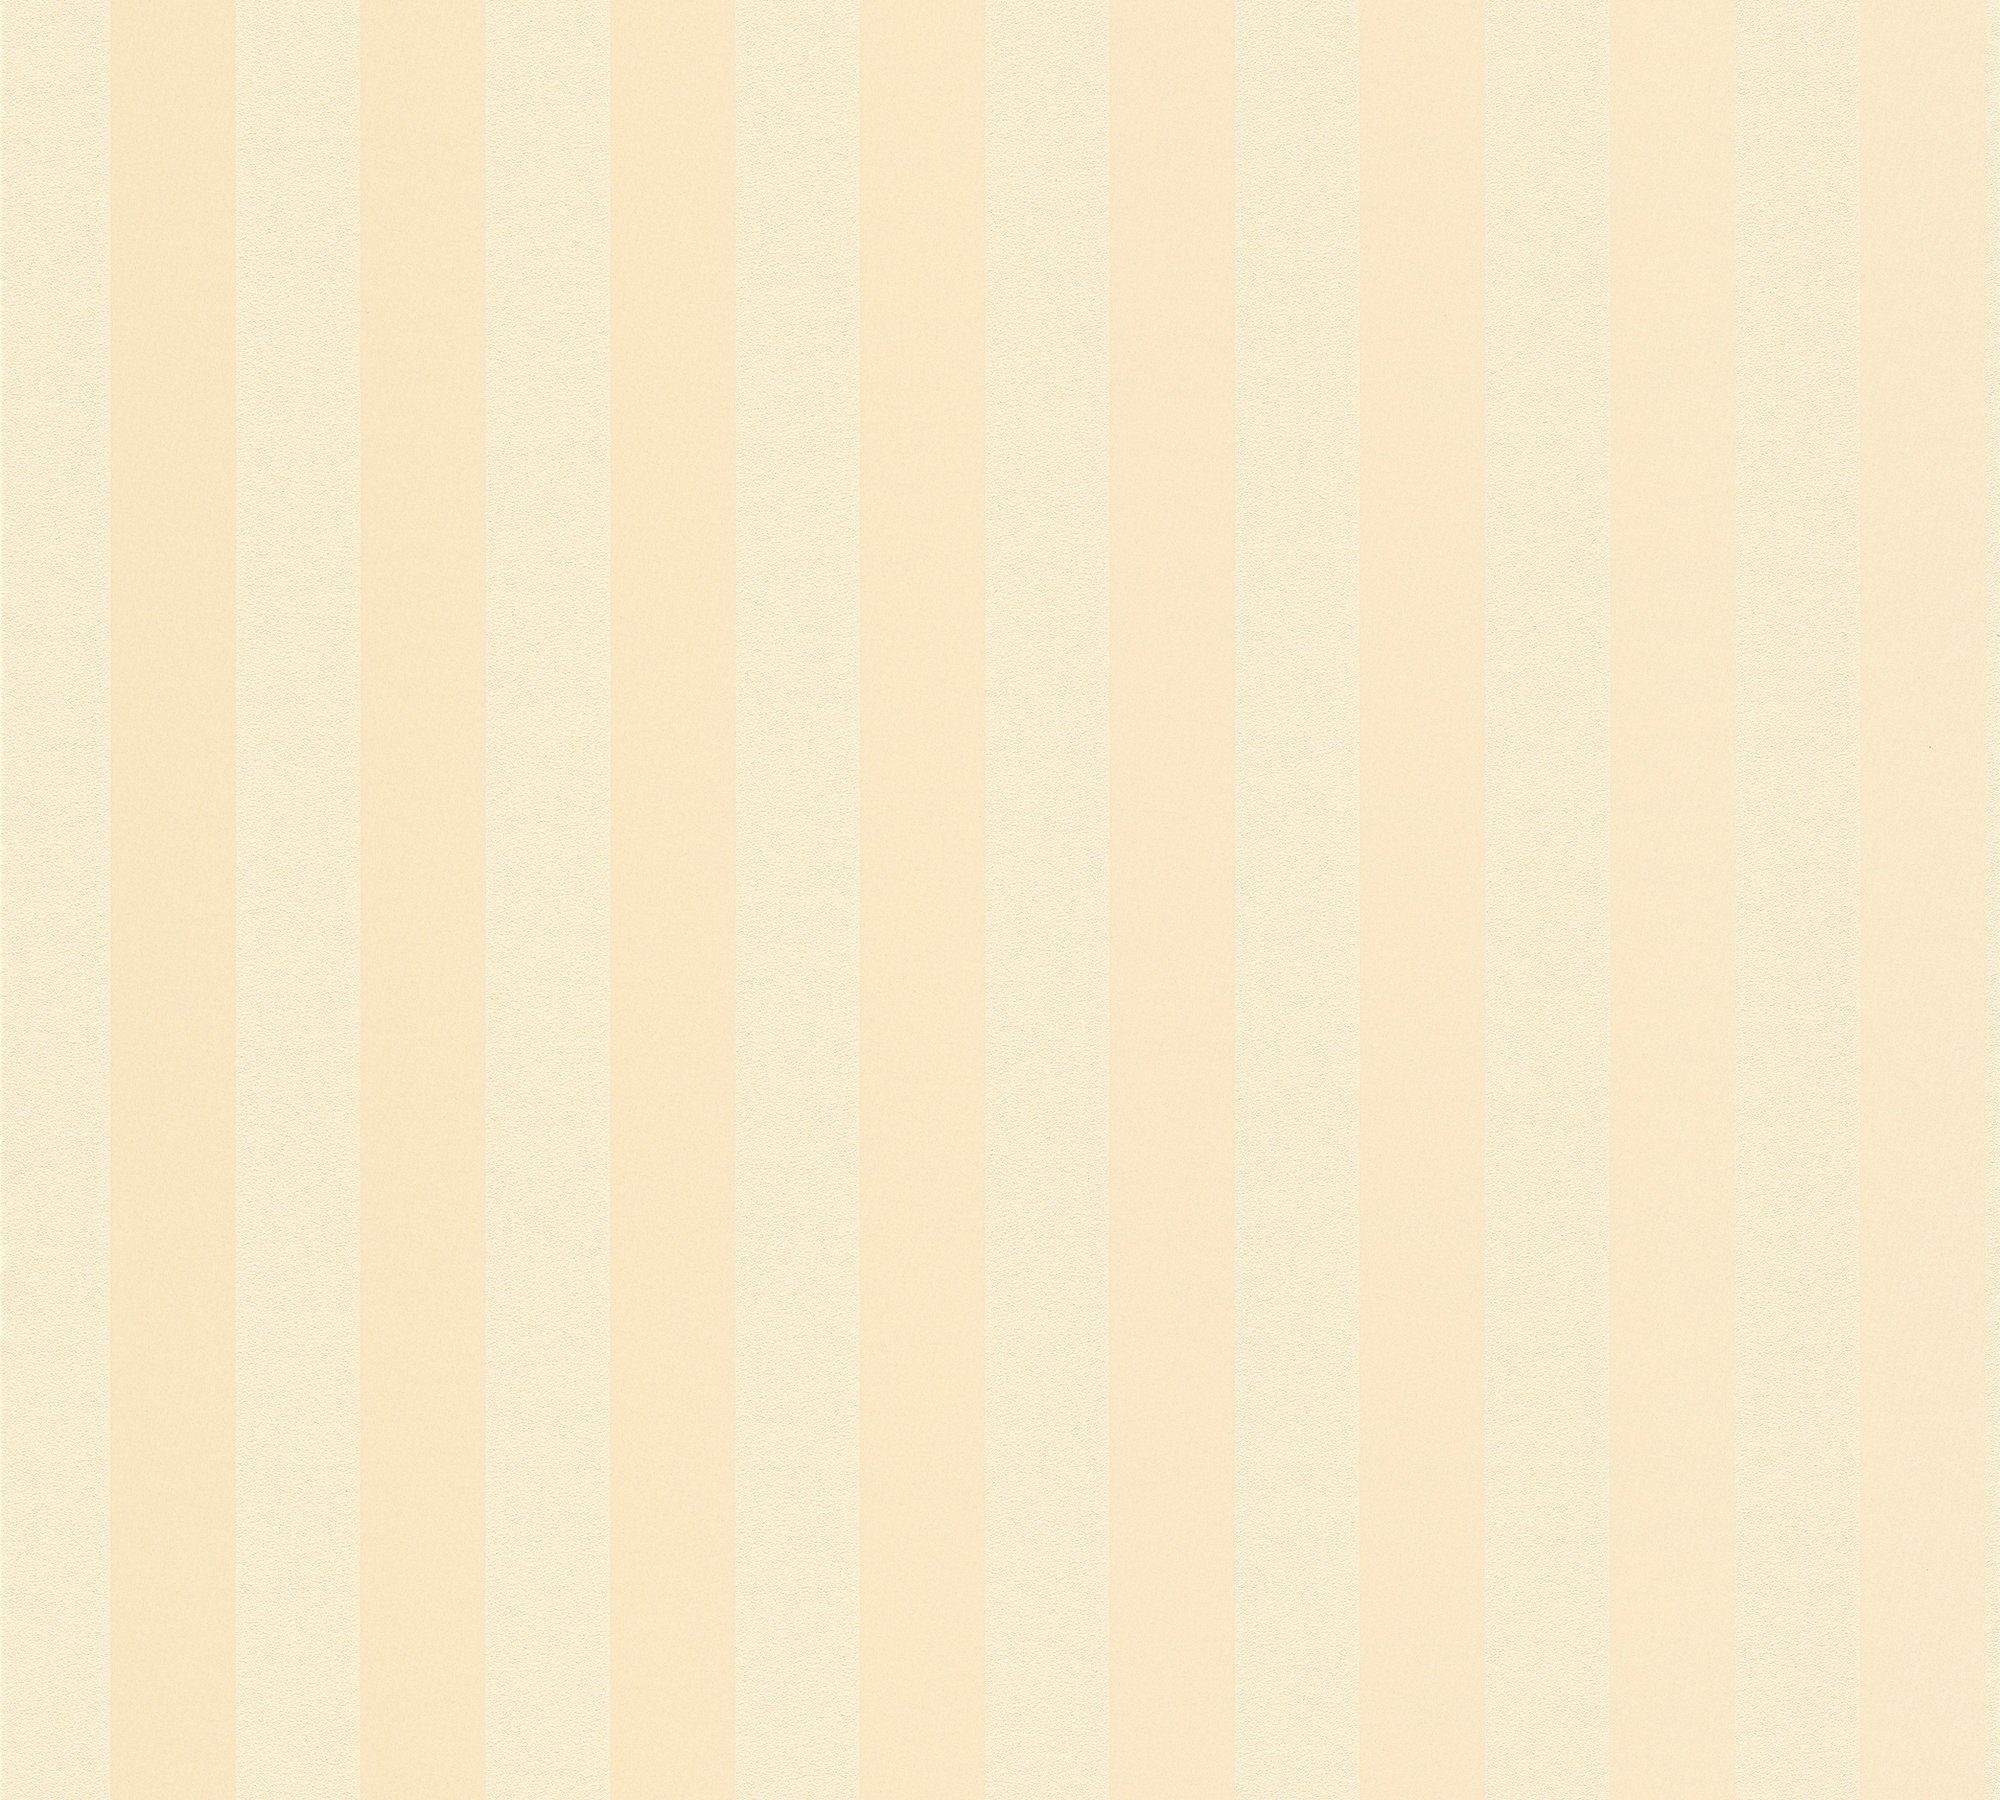 Romantico Streifen, Vliestapete Tapete A.S. Streifen Création beige/sand gestreift, Landhaus